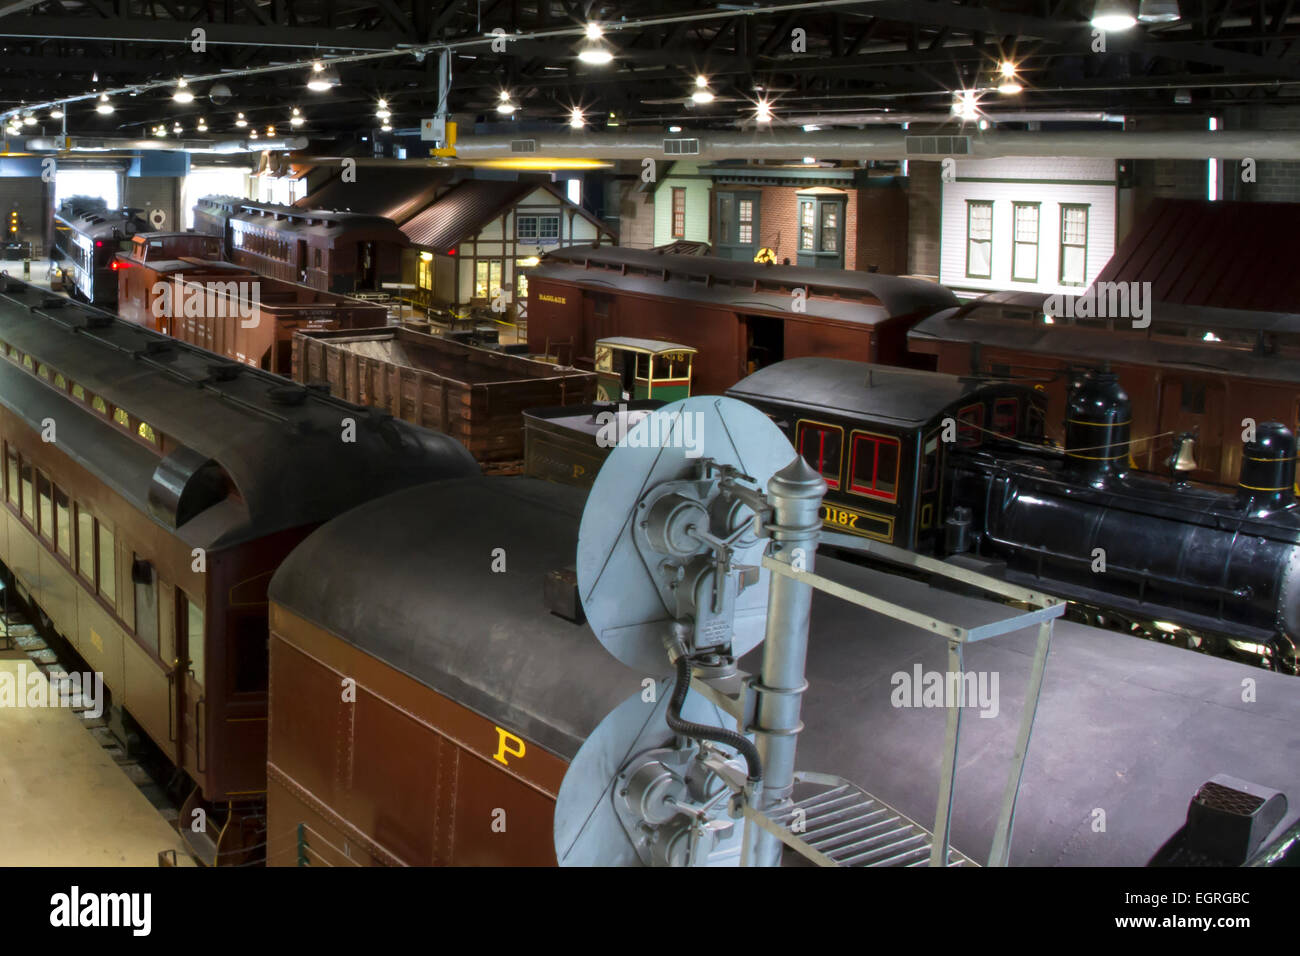 Antike Waggons und Zusatzausrüstung auf Schienen in der Nähe von einer Plattform eines Modells Bahnhof Stockfoto